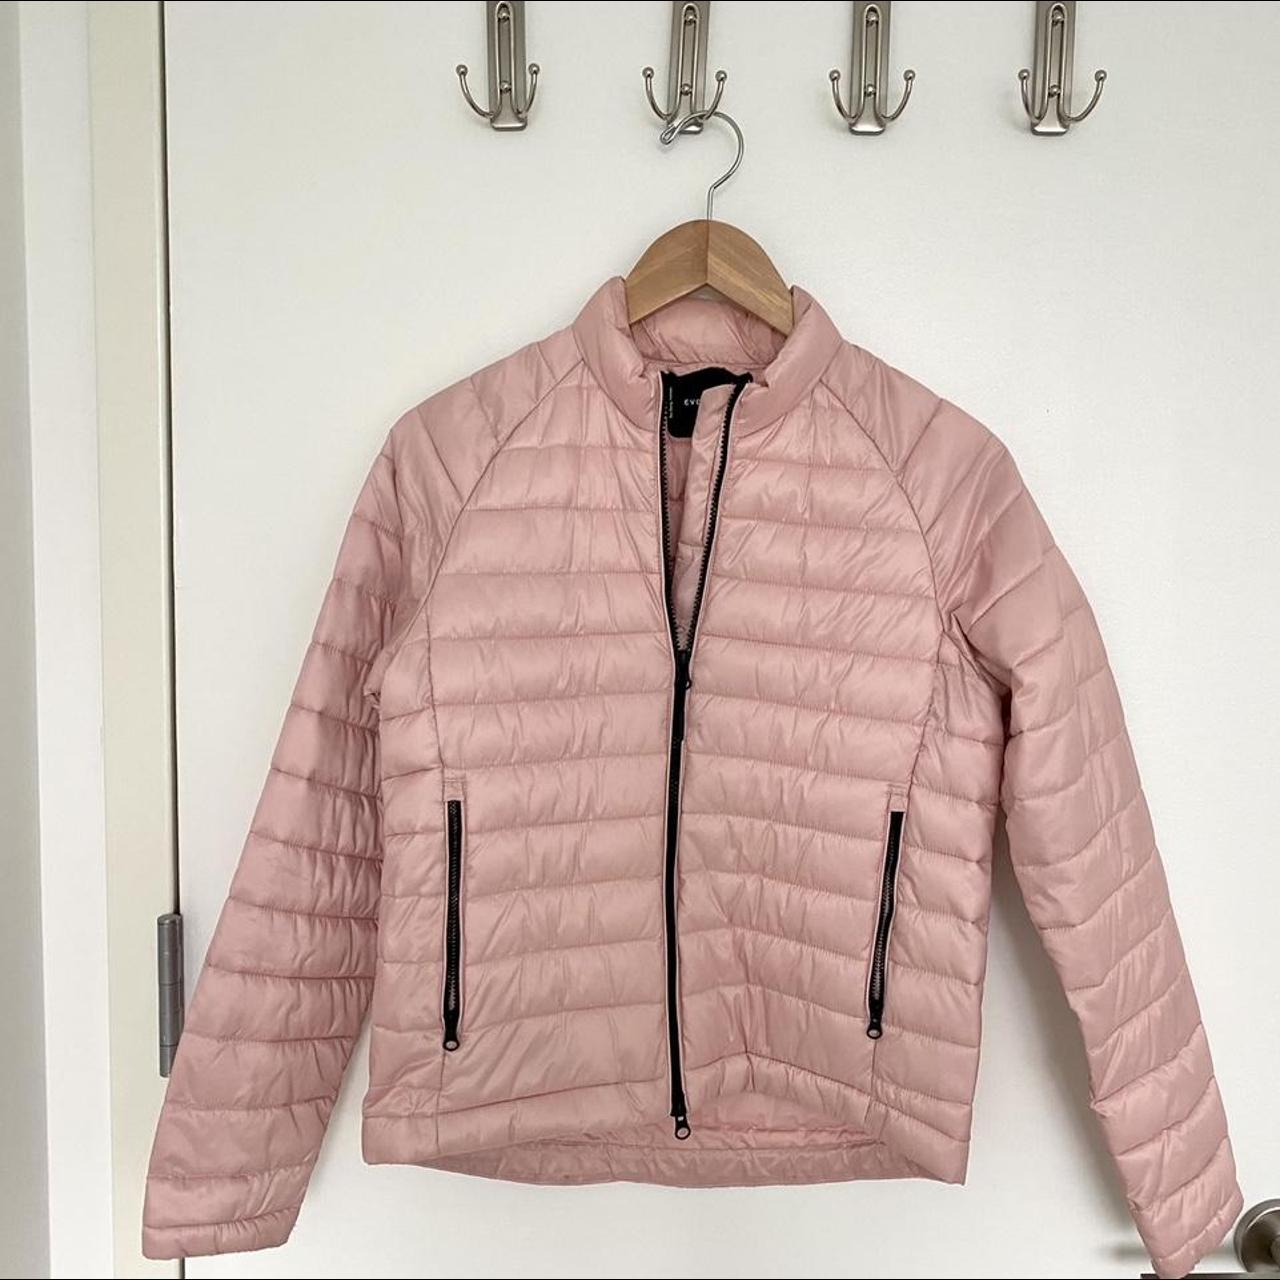 Everlane renew puffer jacket Super lightweight pink... - Depop